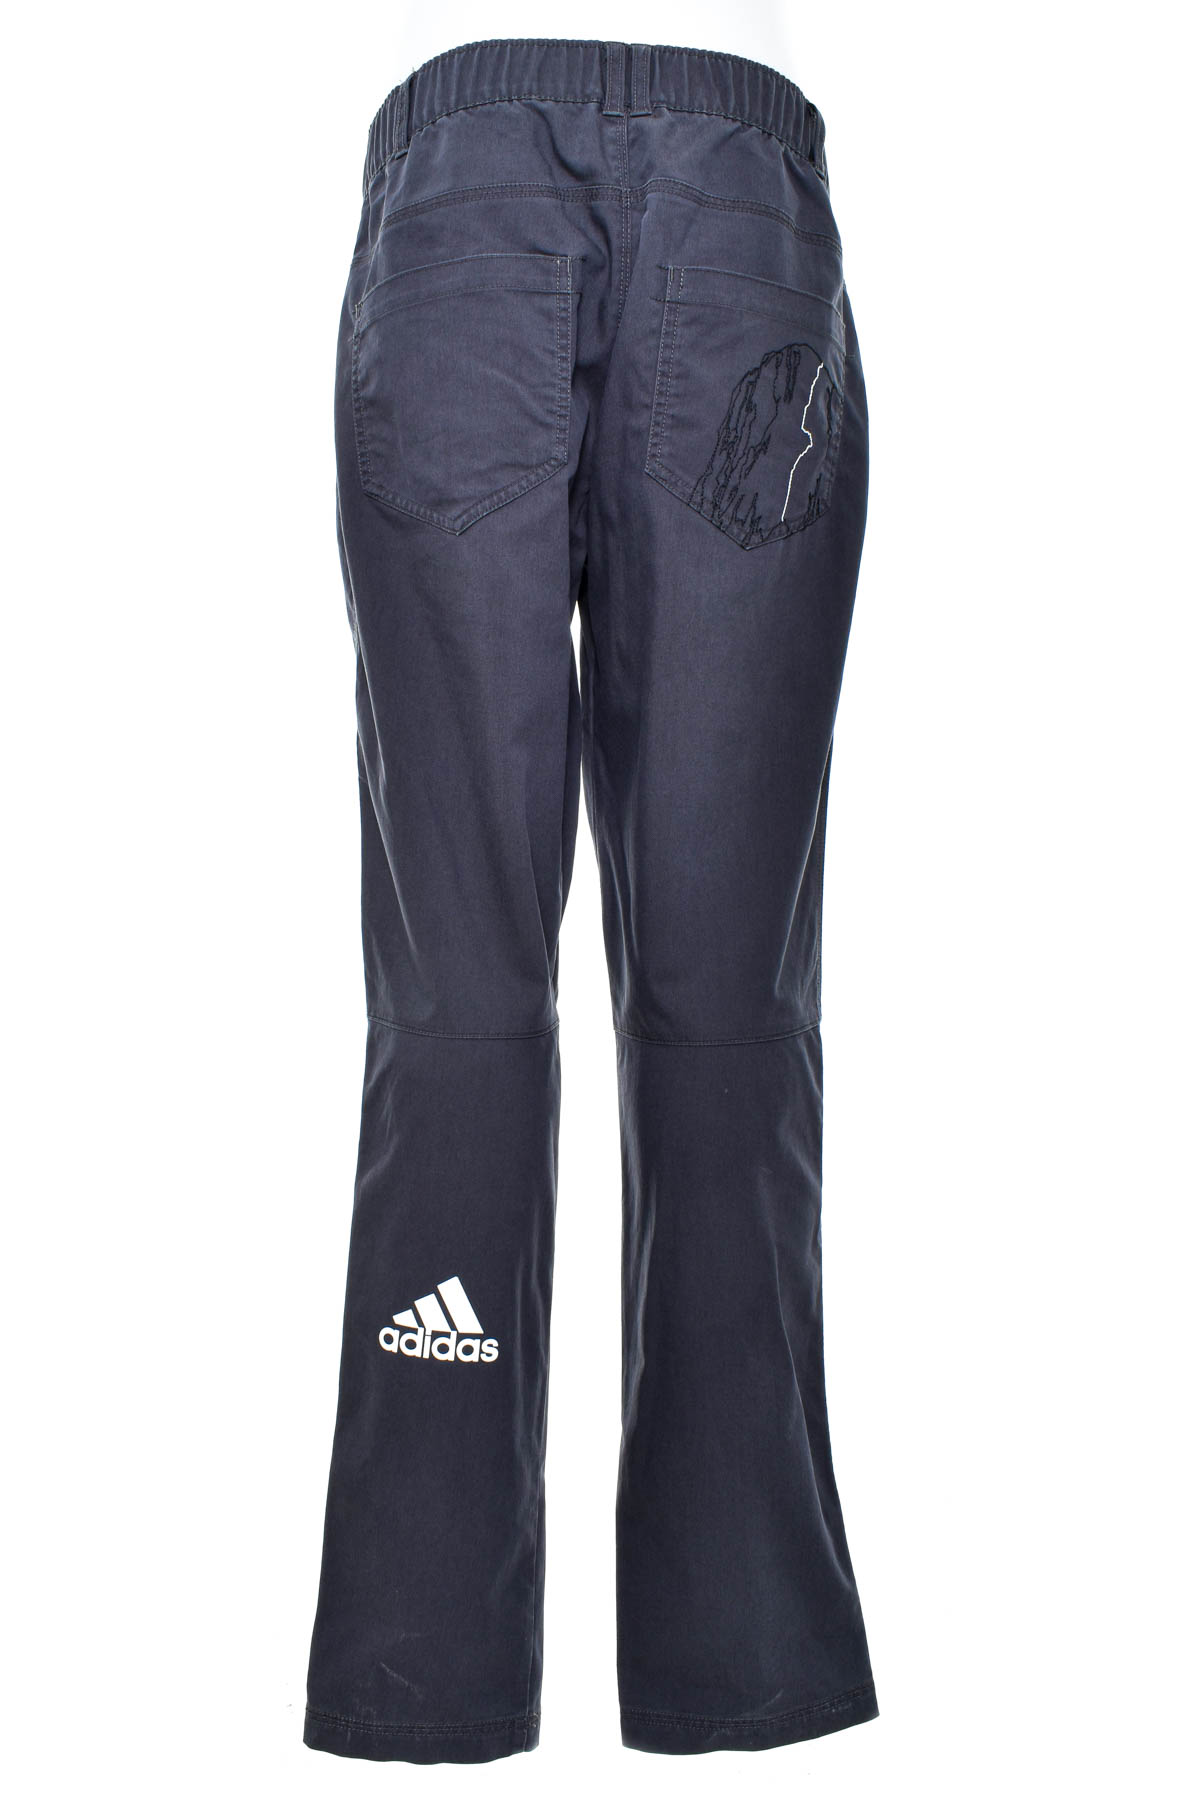 Pantalon pentru bărbați - Adidas - 1